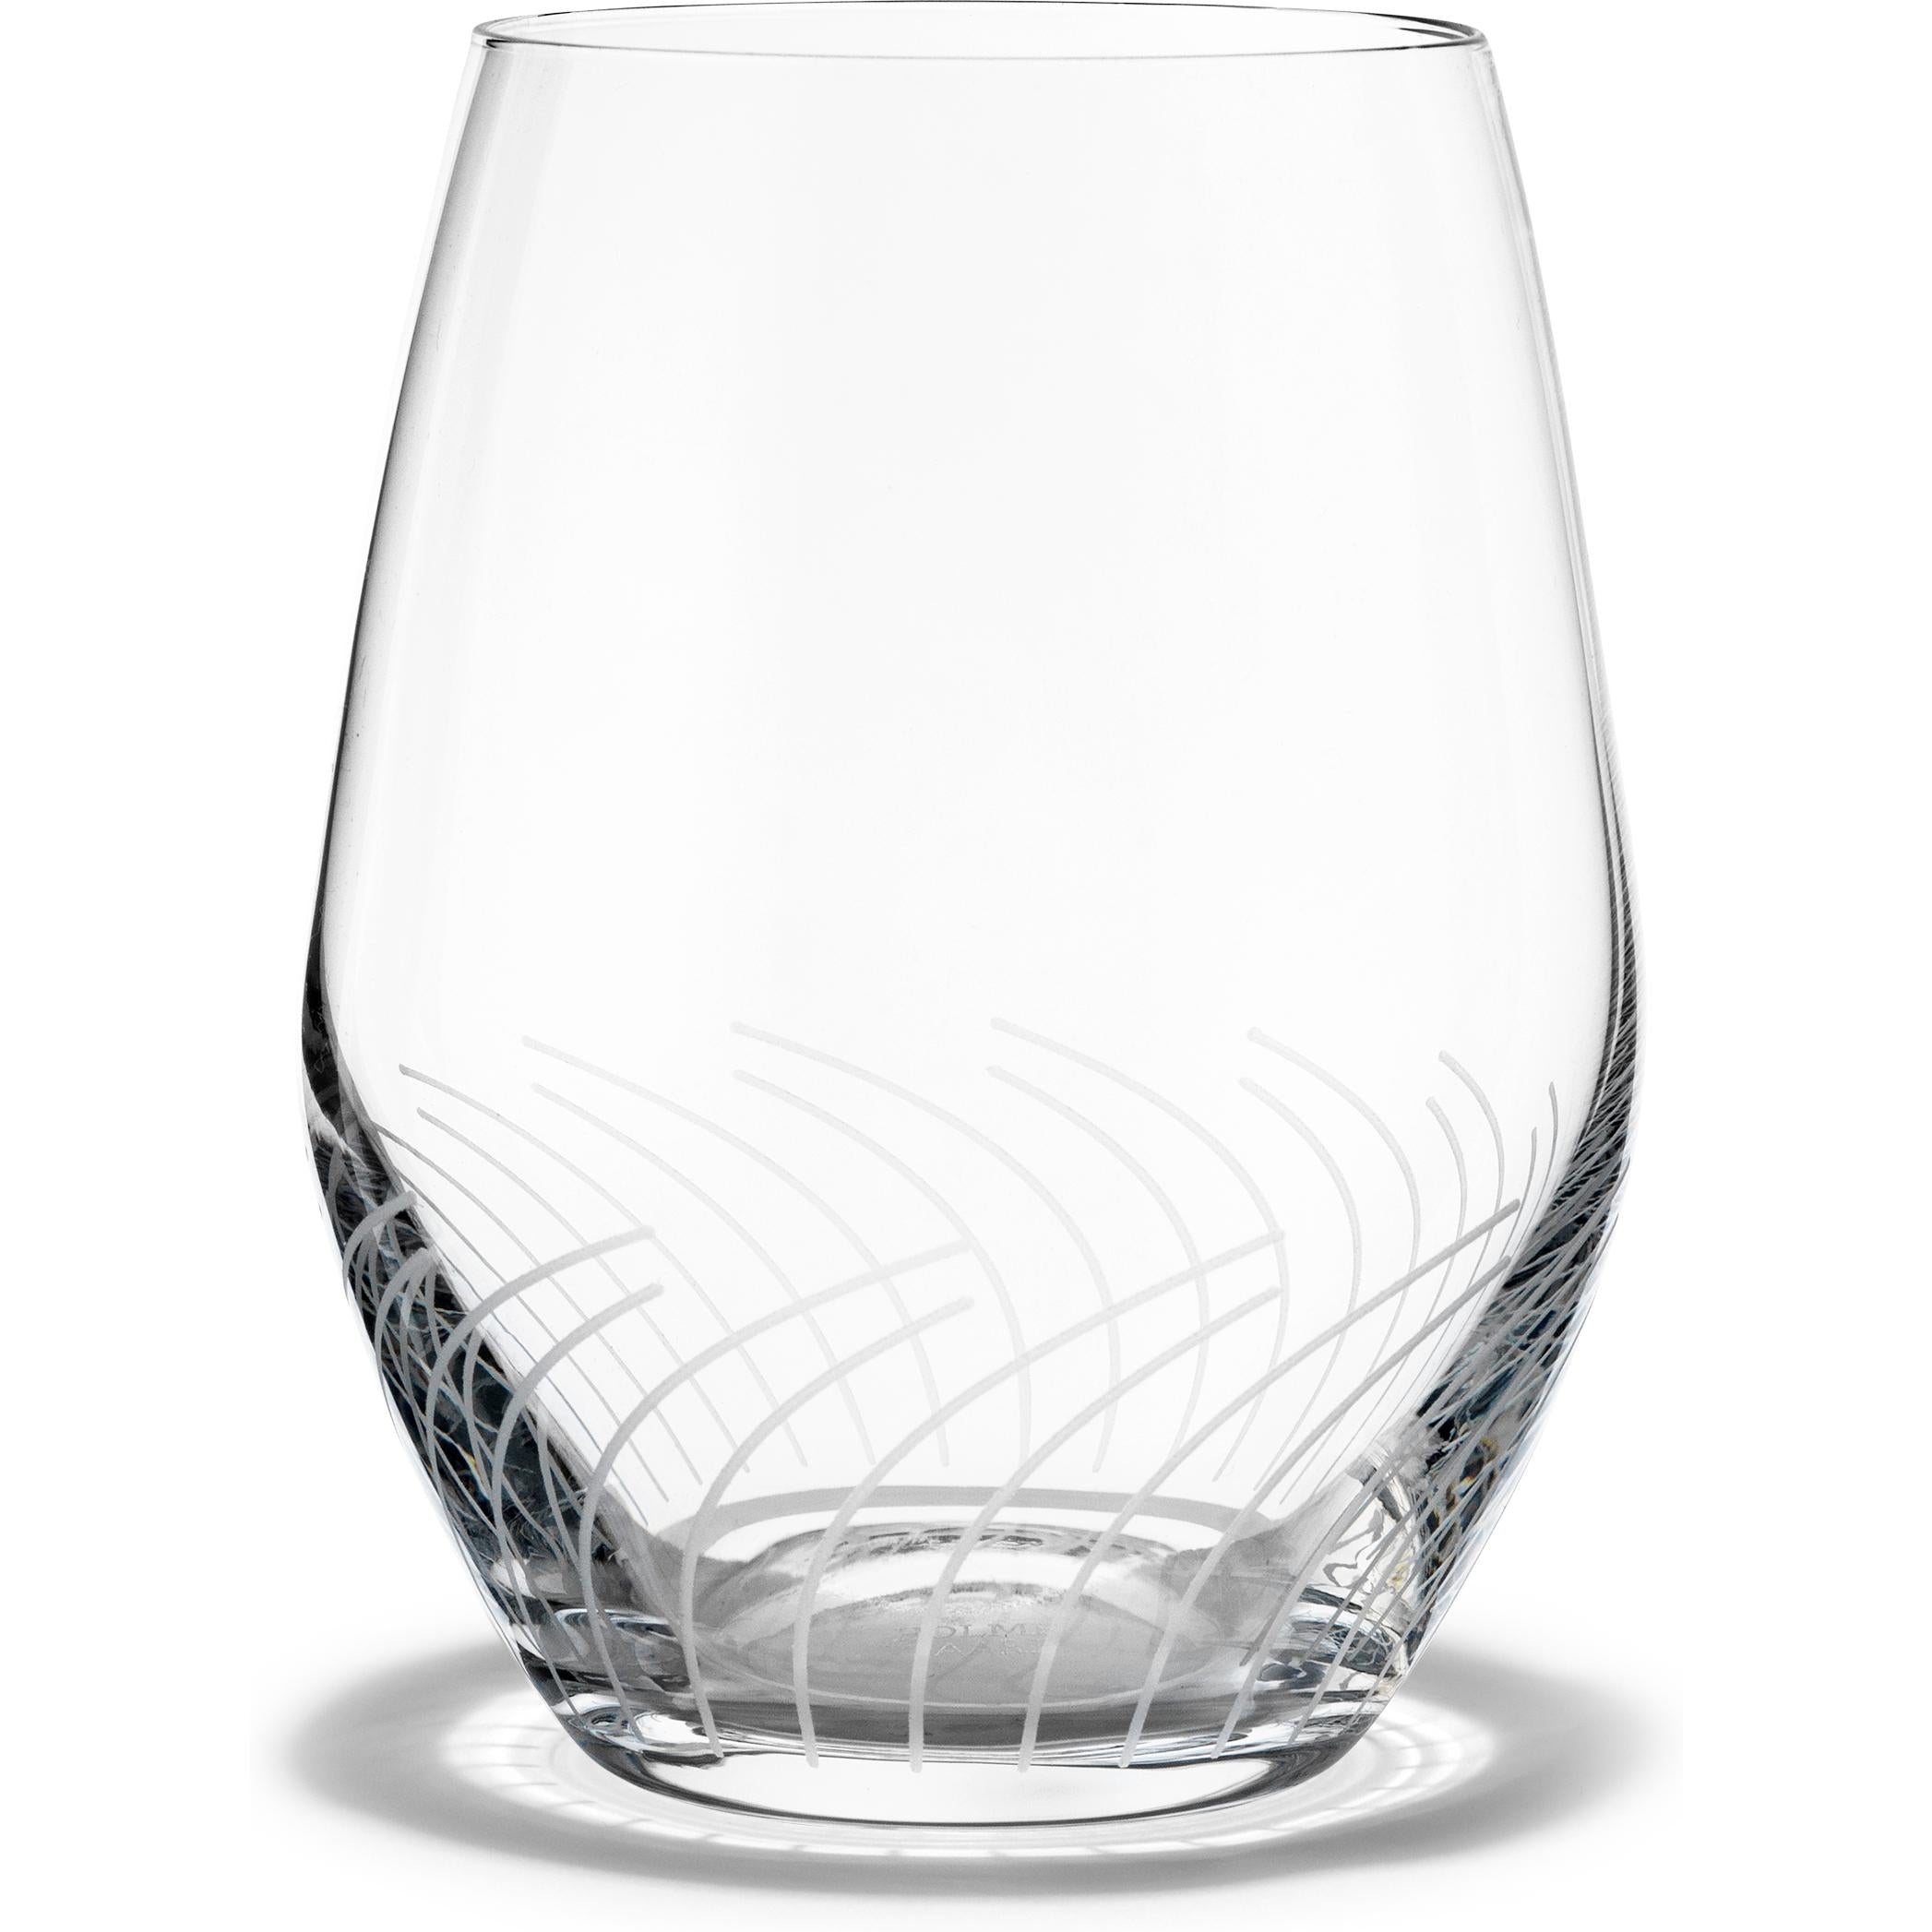 Holmegaard Cabernet linjer vattenglas, 2 st.